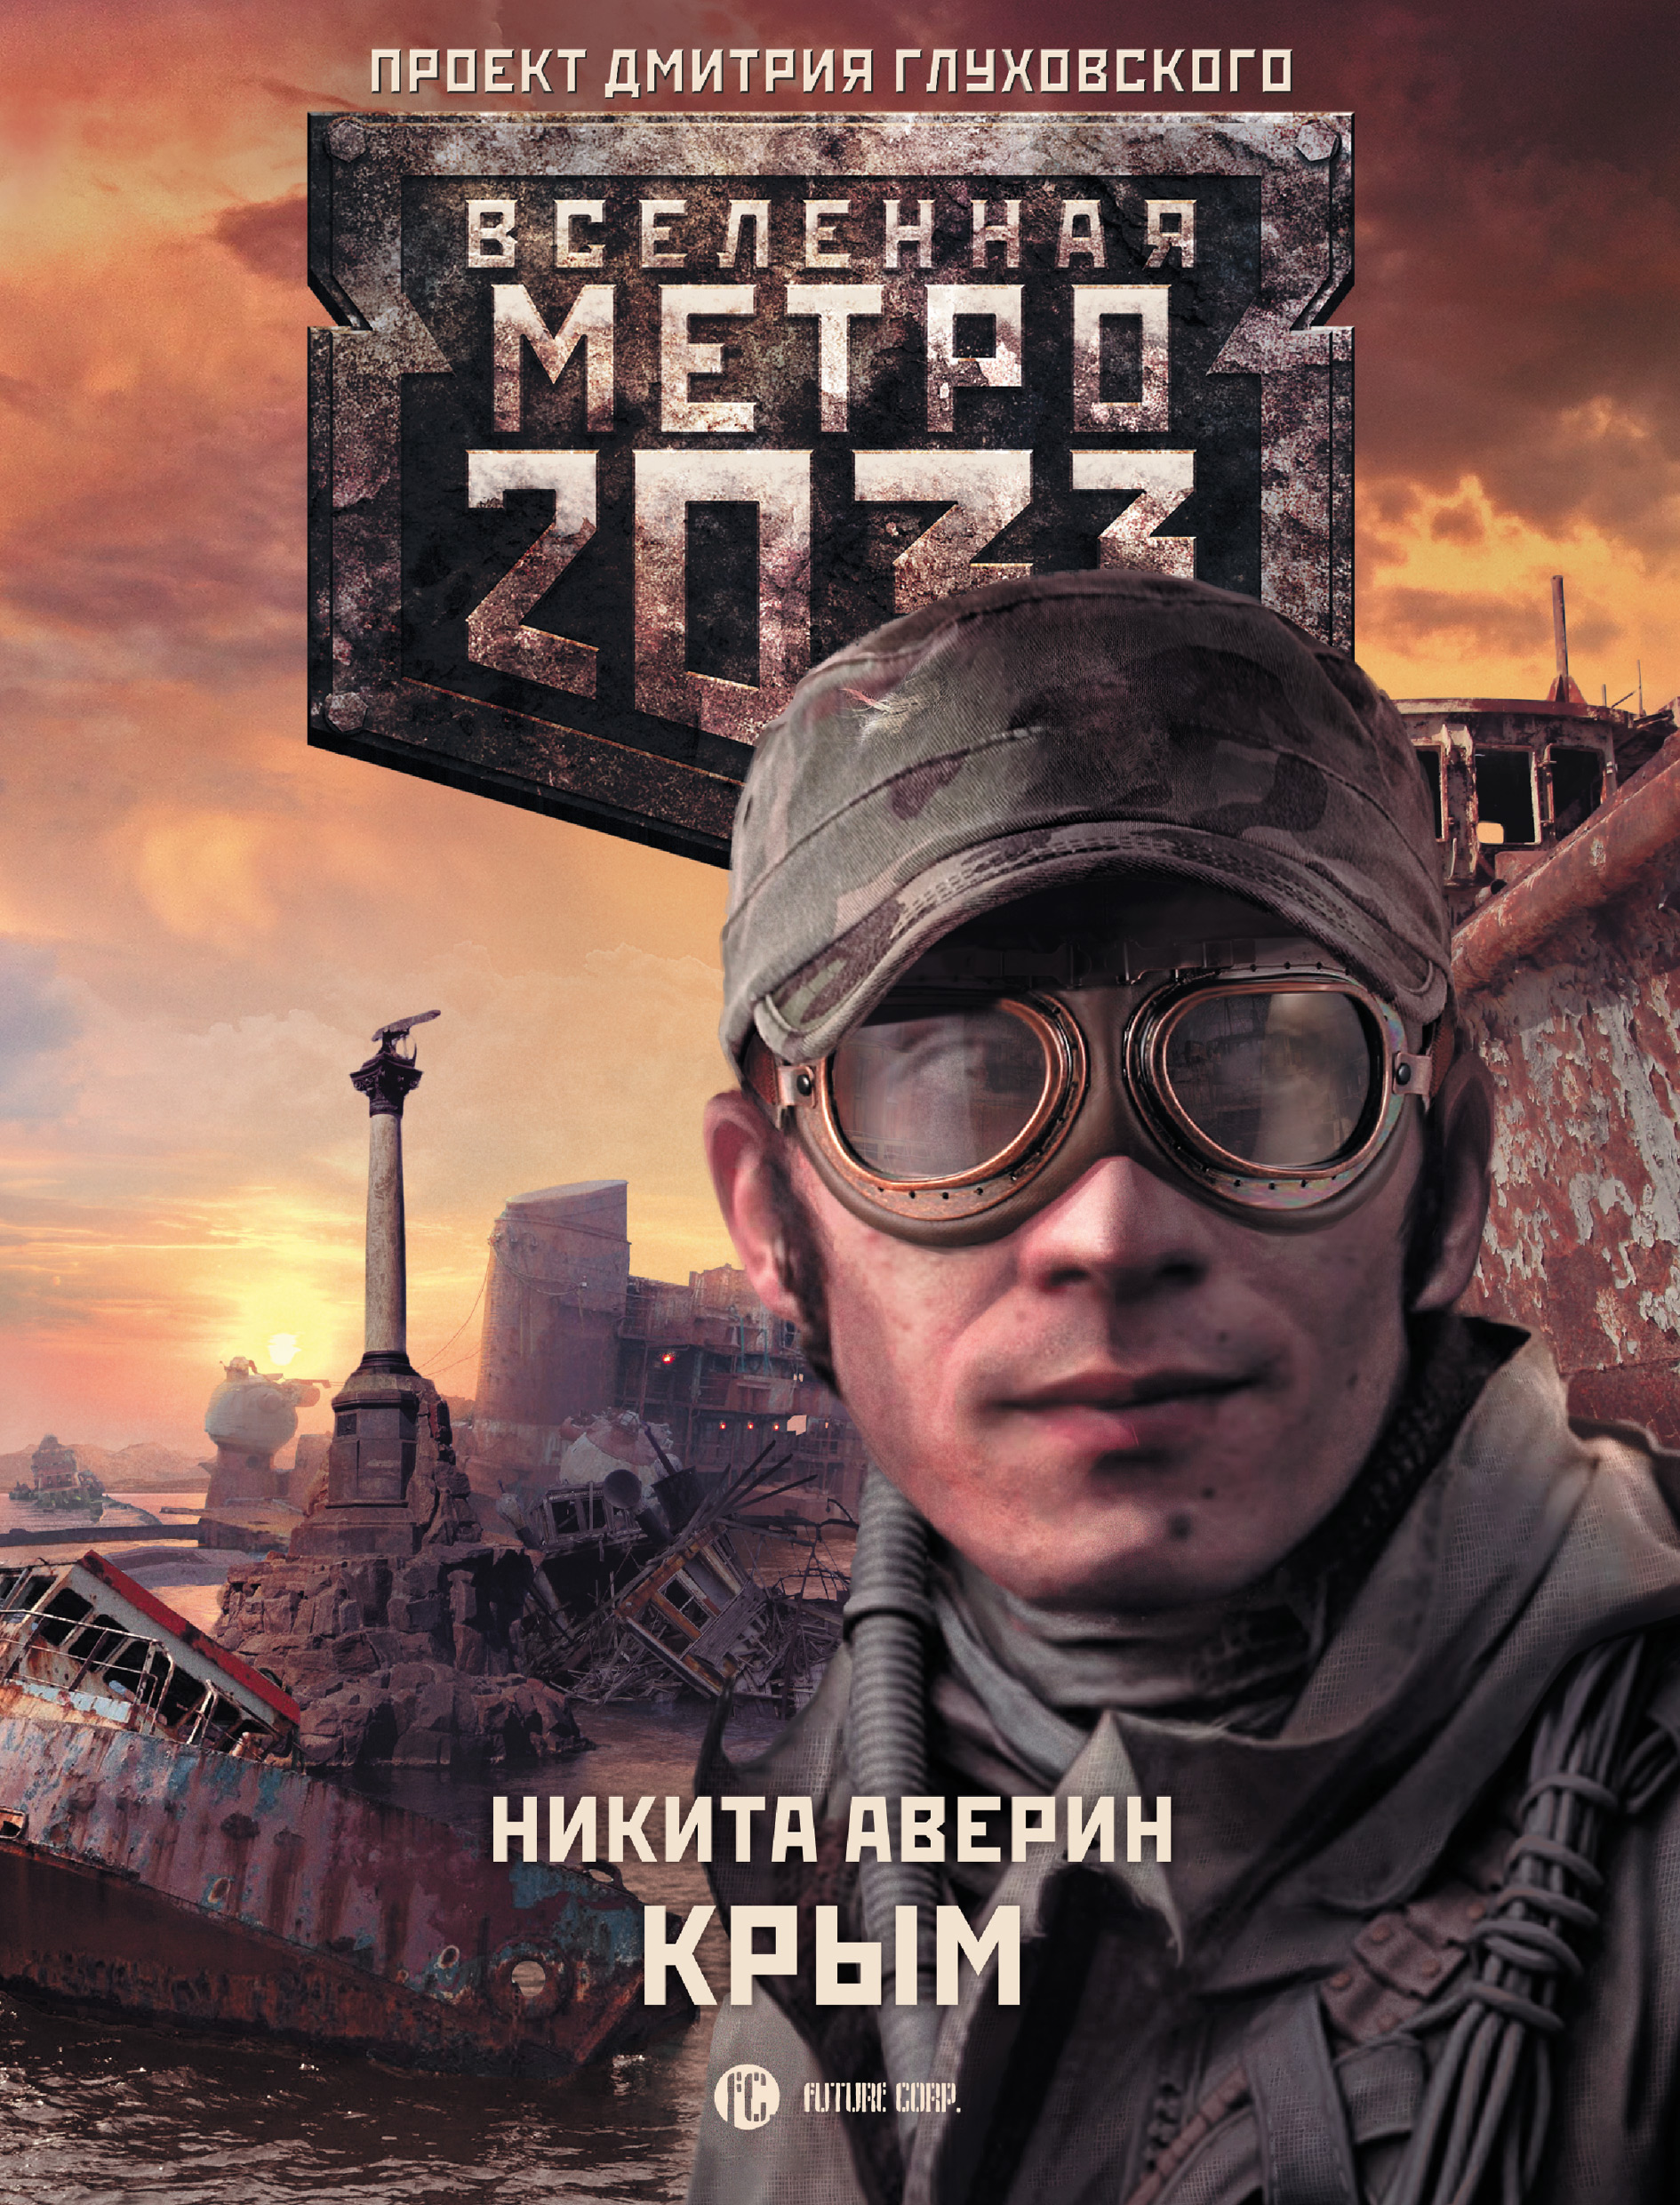 Метро 2033: Крым